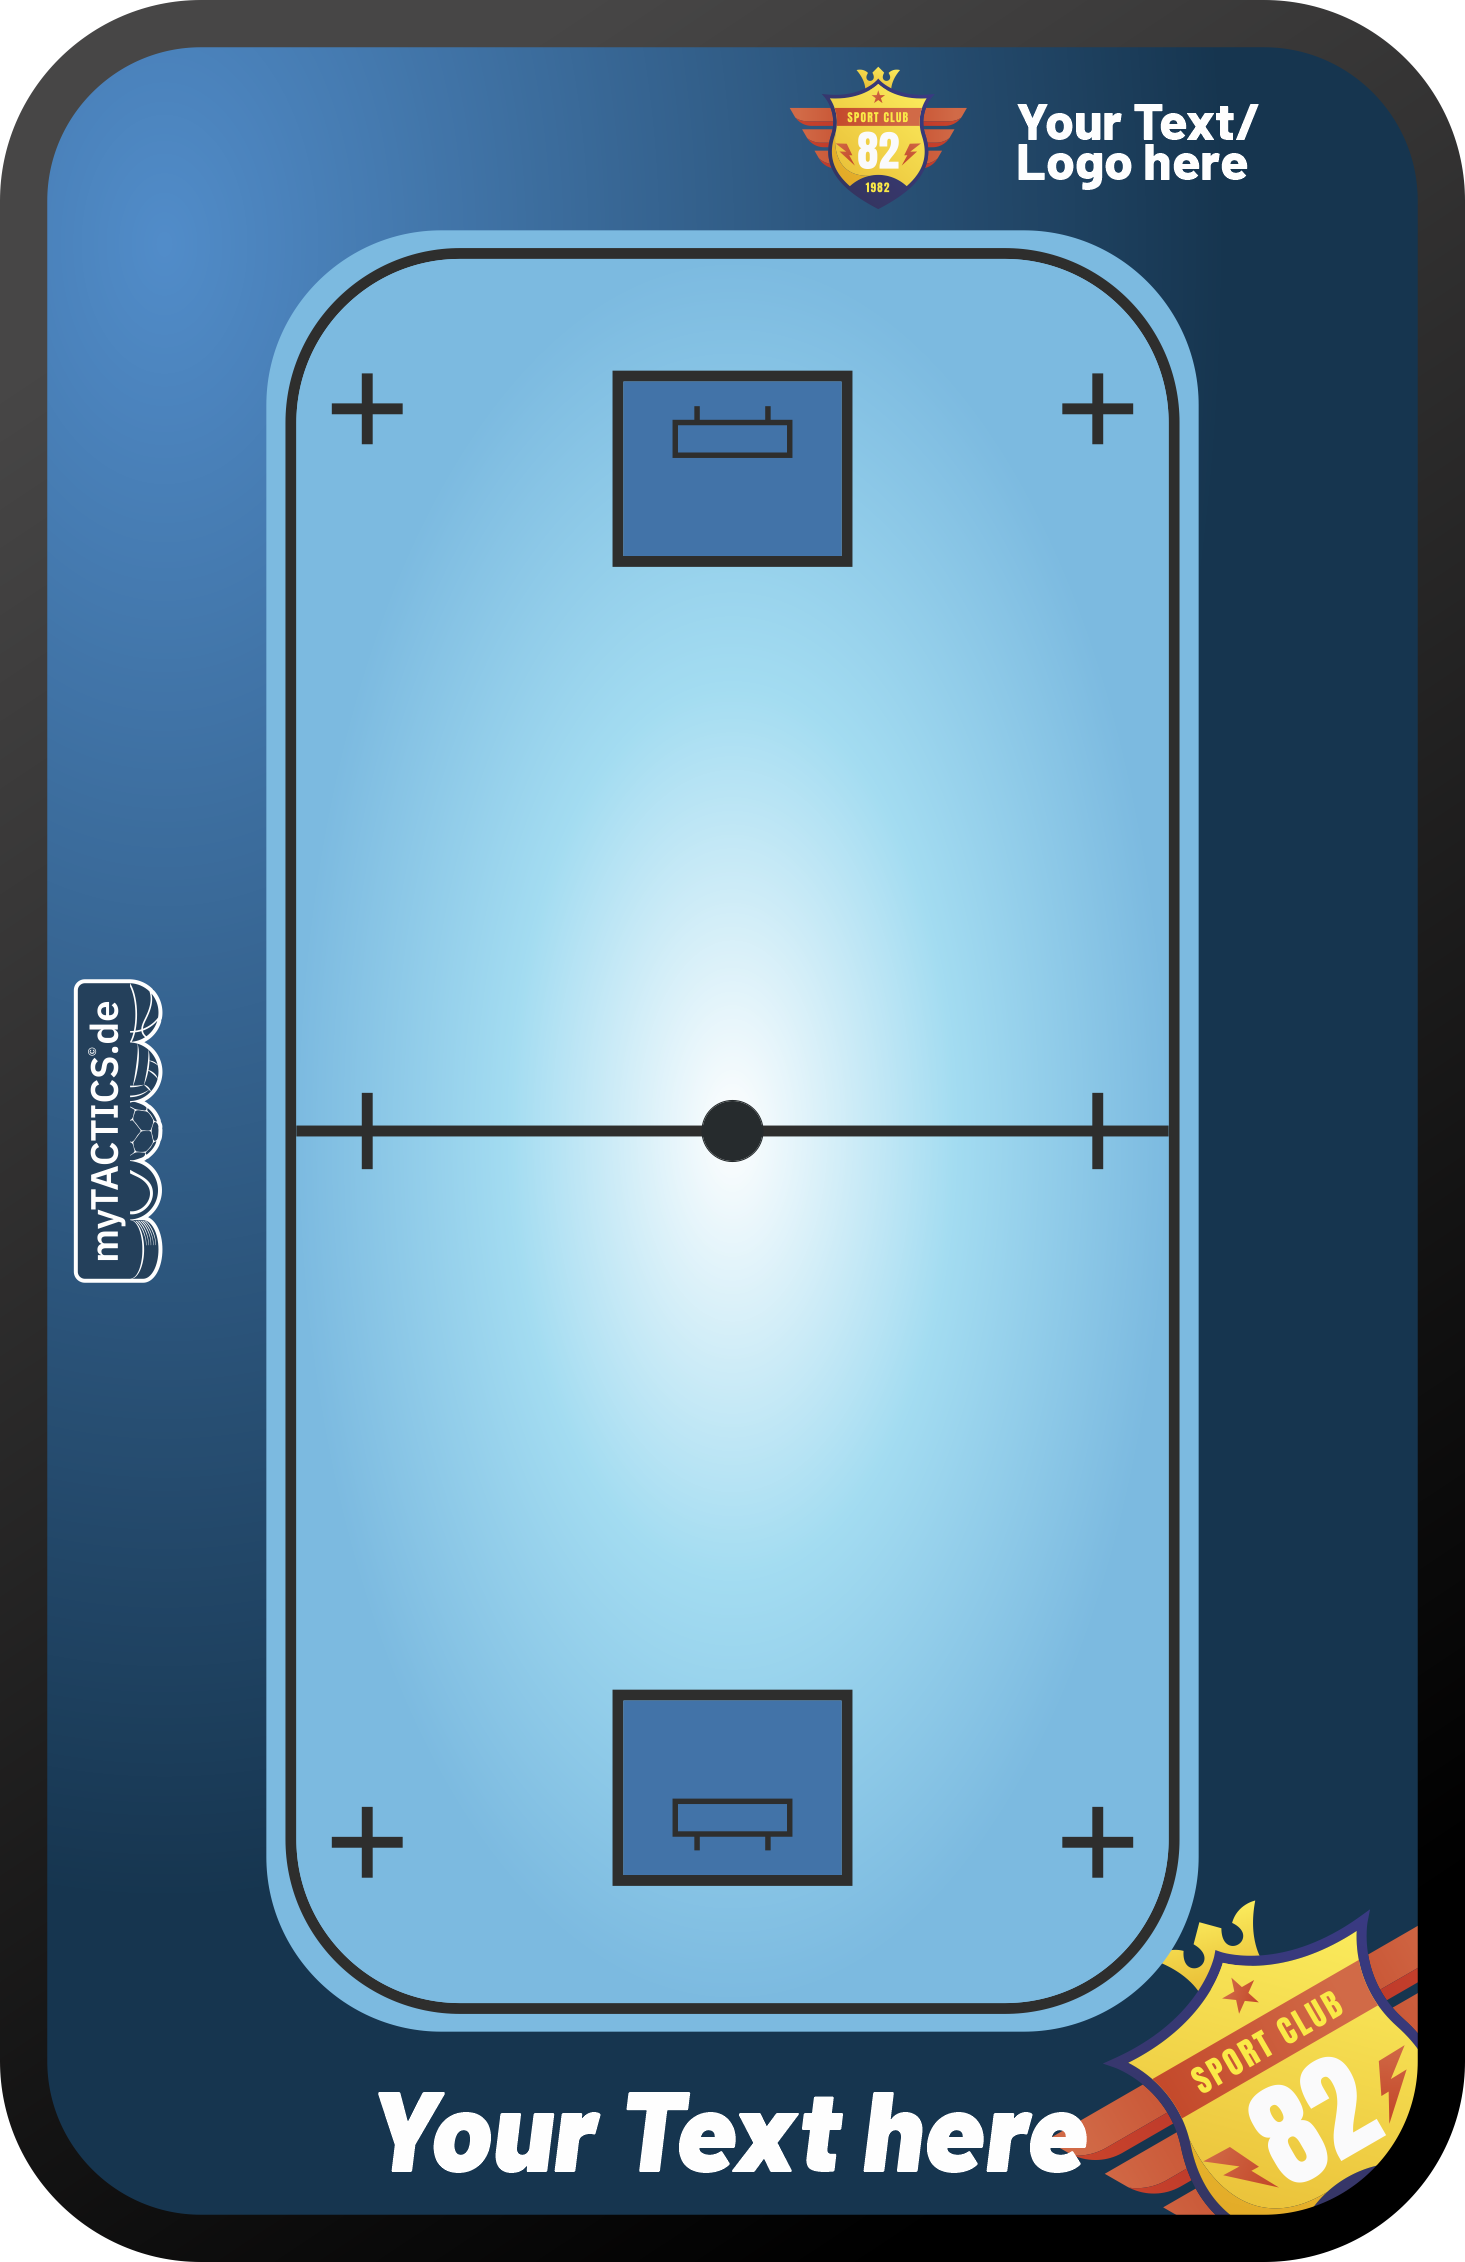 Taktiktafel Floorball